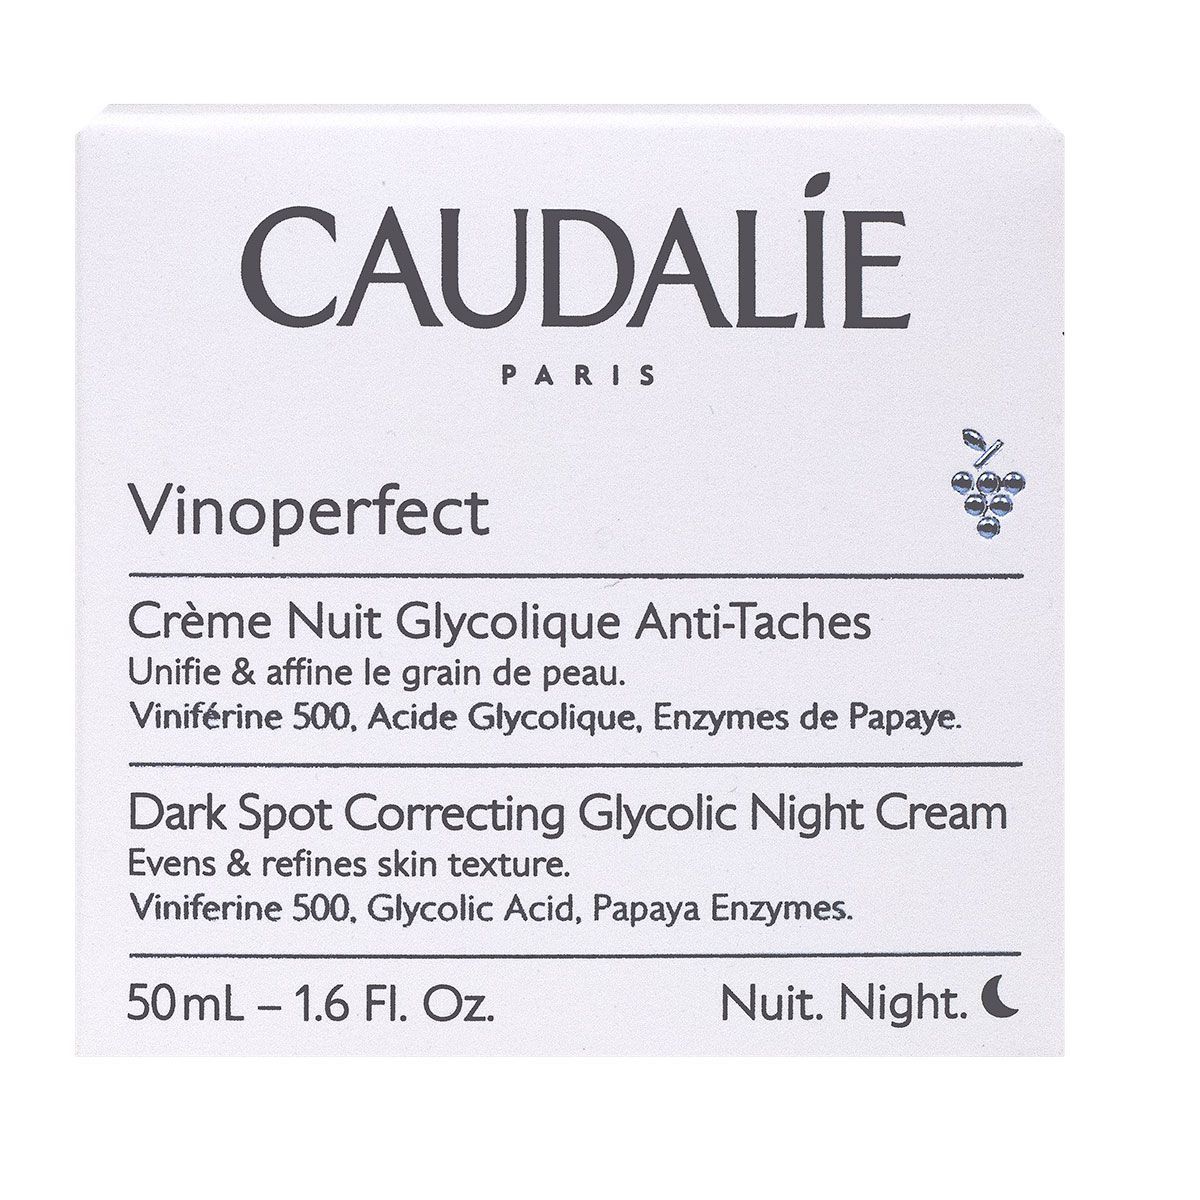 Caudalie Vinoperfect crème nuit glycolique - 50ml